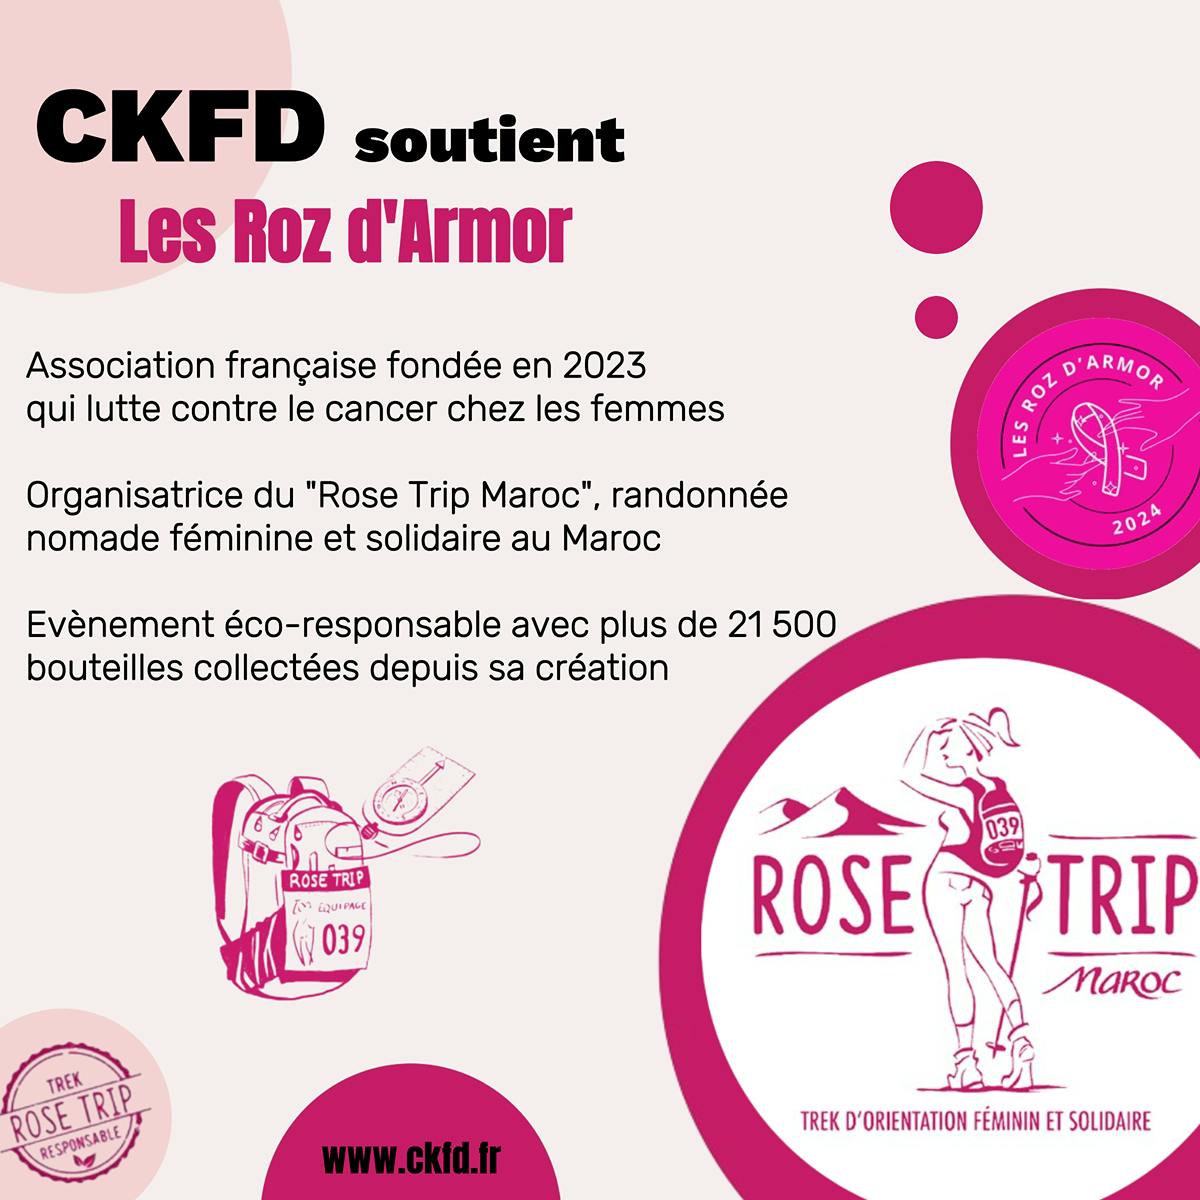 CKFD soutient les Roz d'Armor